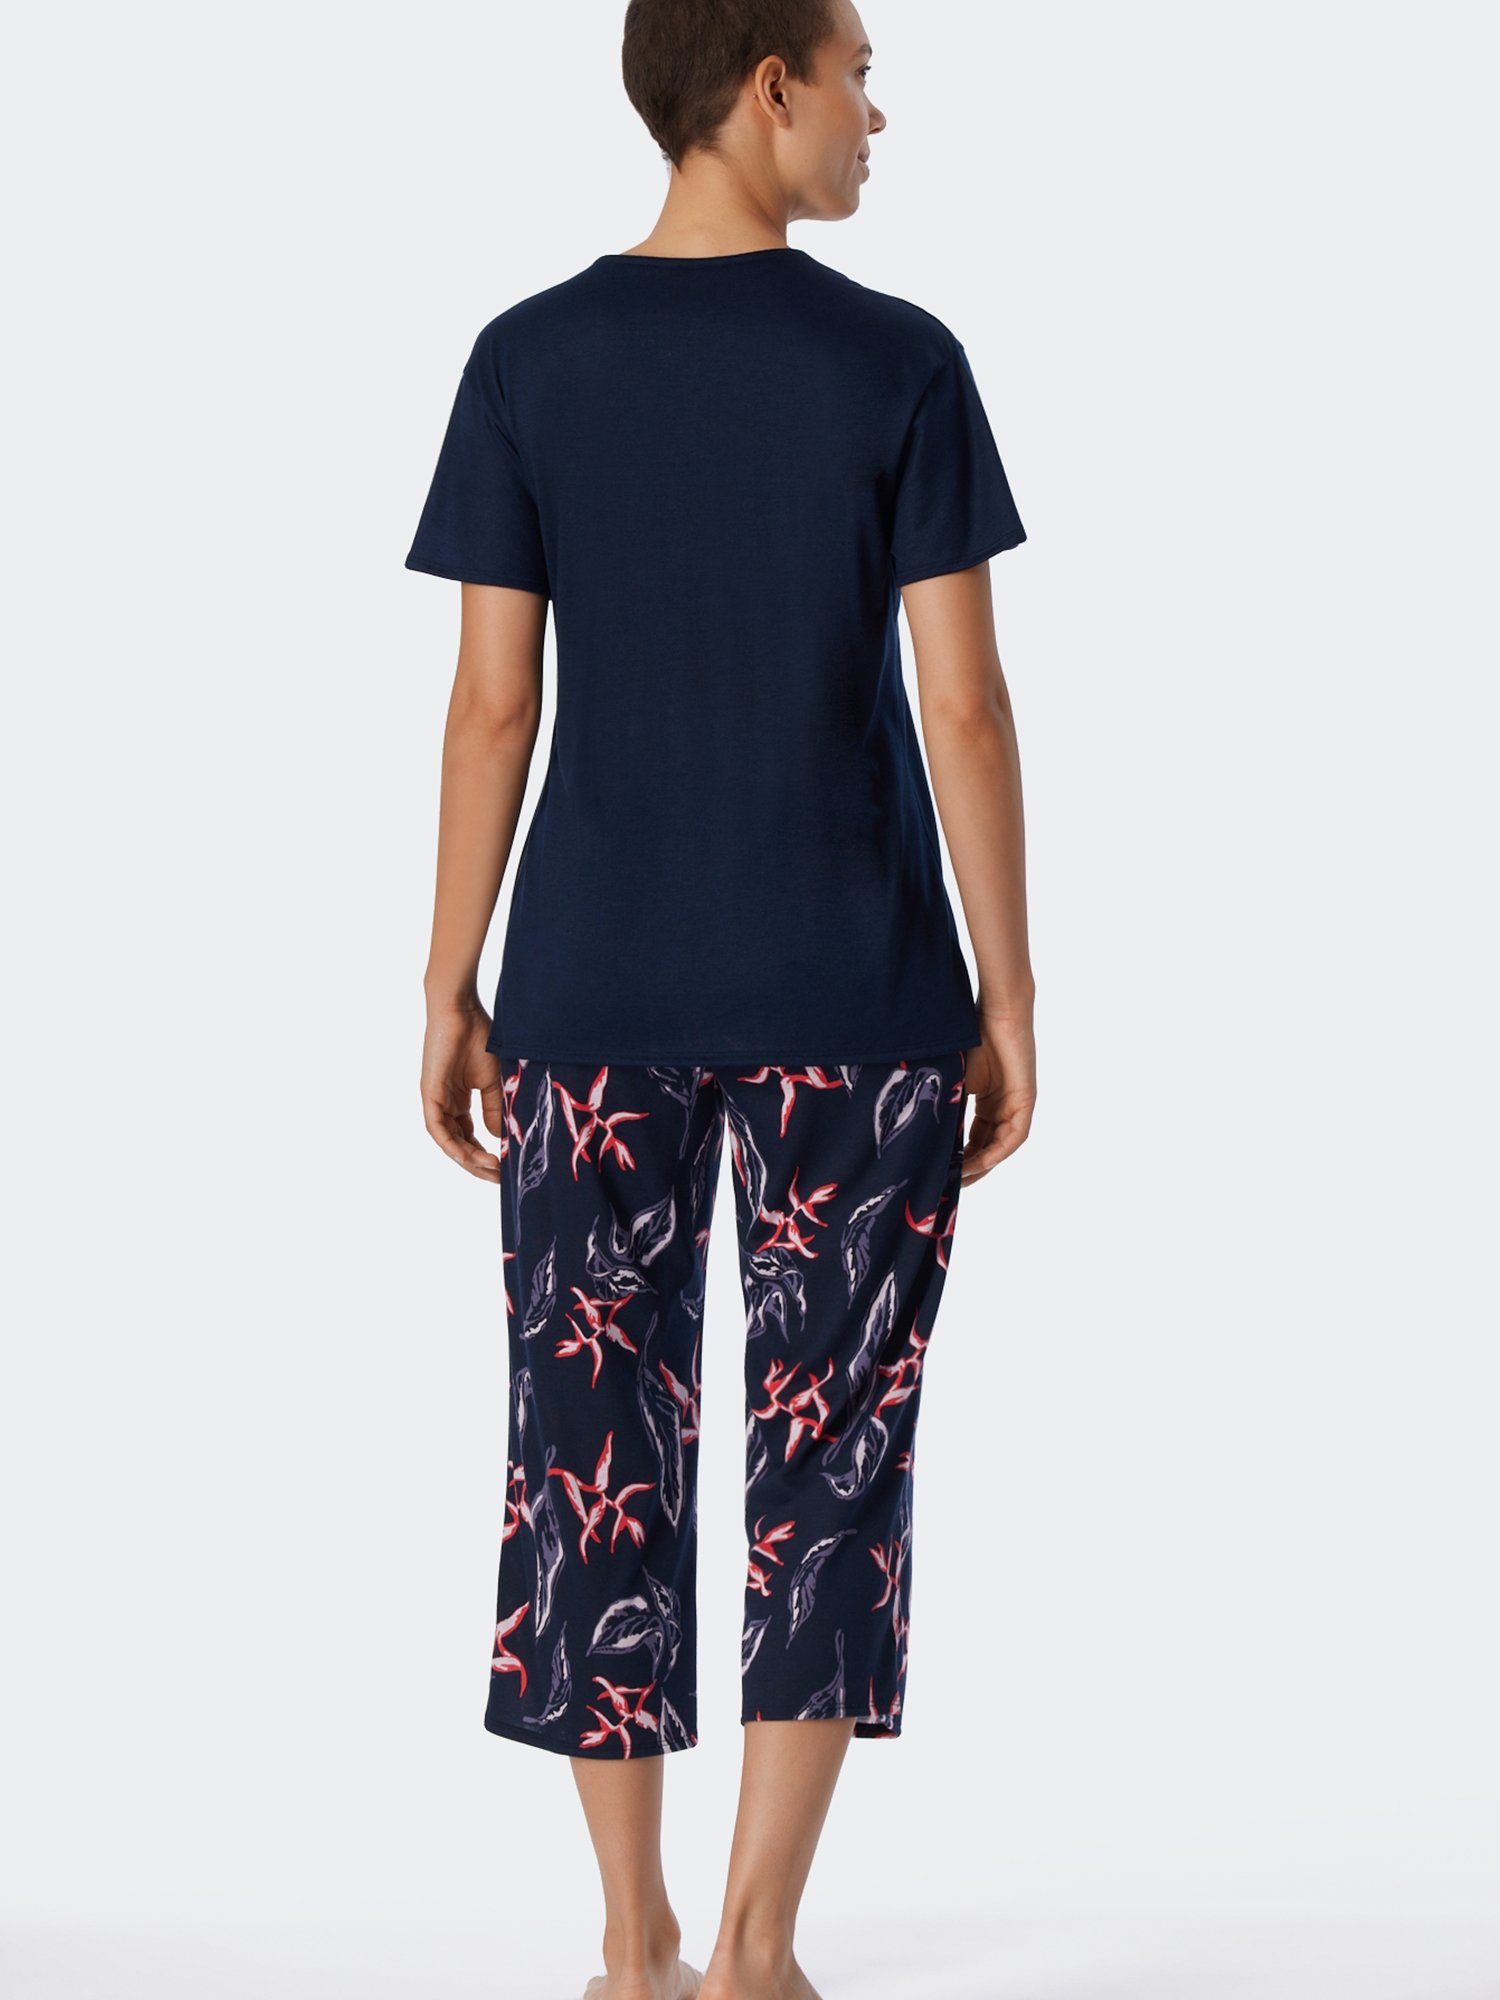 multicolor Schiesser Contemporary 1 Pyjama Nightwear